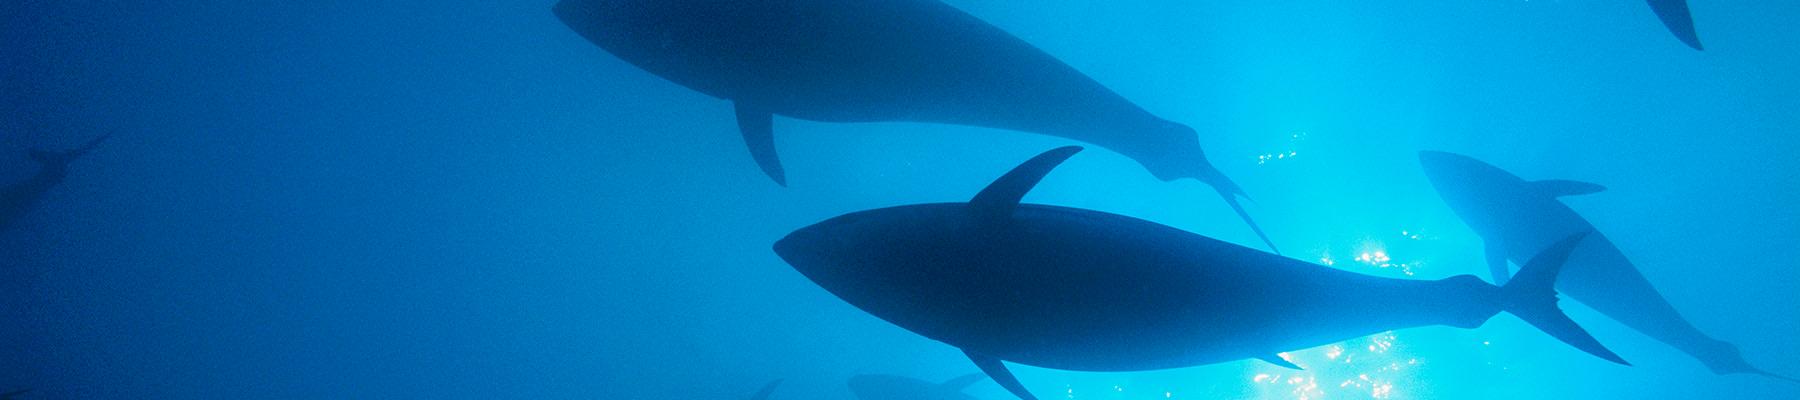 Cá ngừ vây xanh phía bắc © Brian J. Skerry / National Geographic Stock / WWF